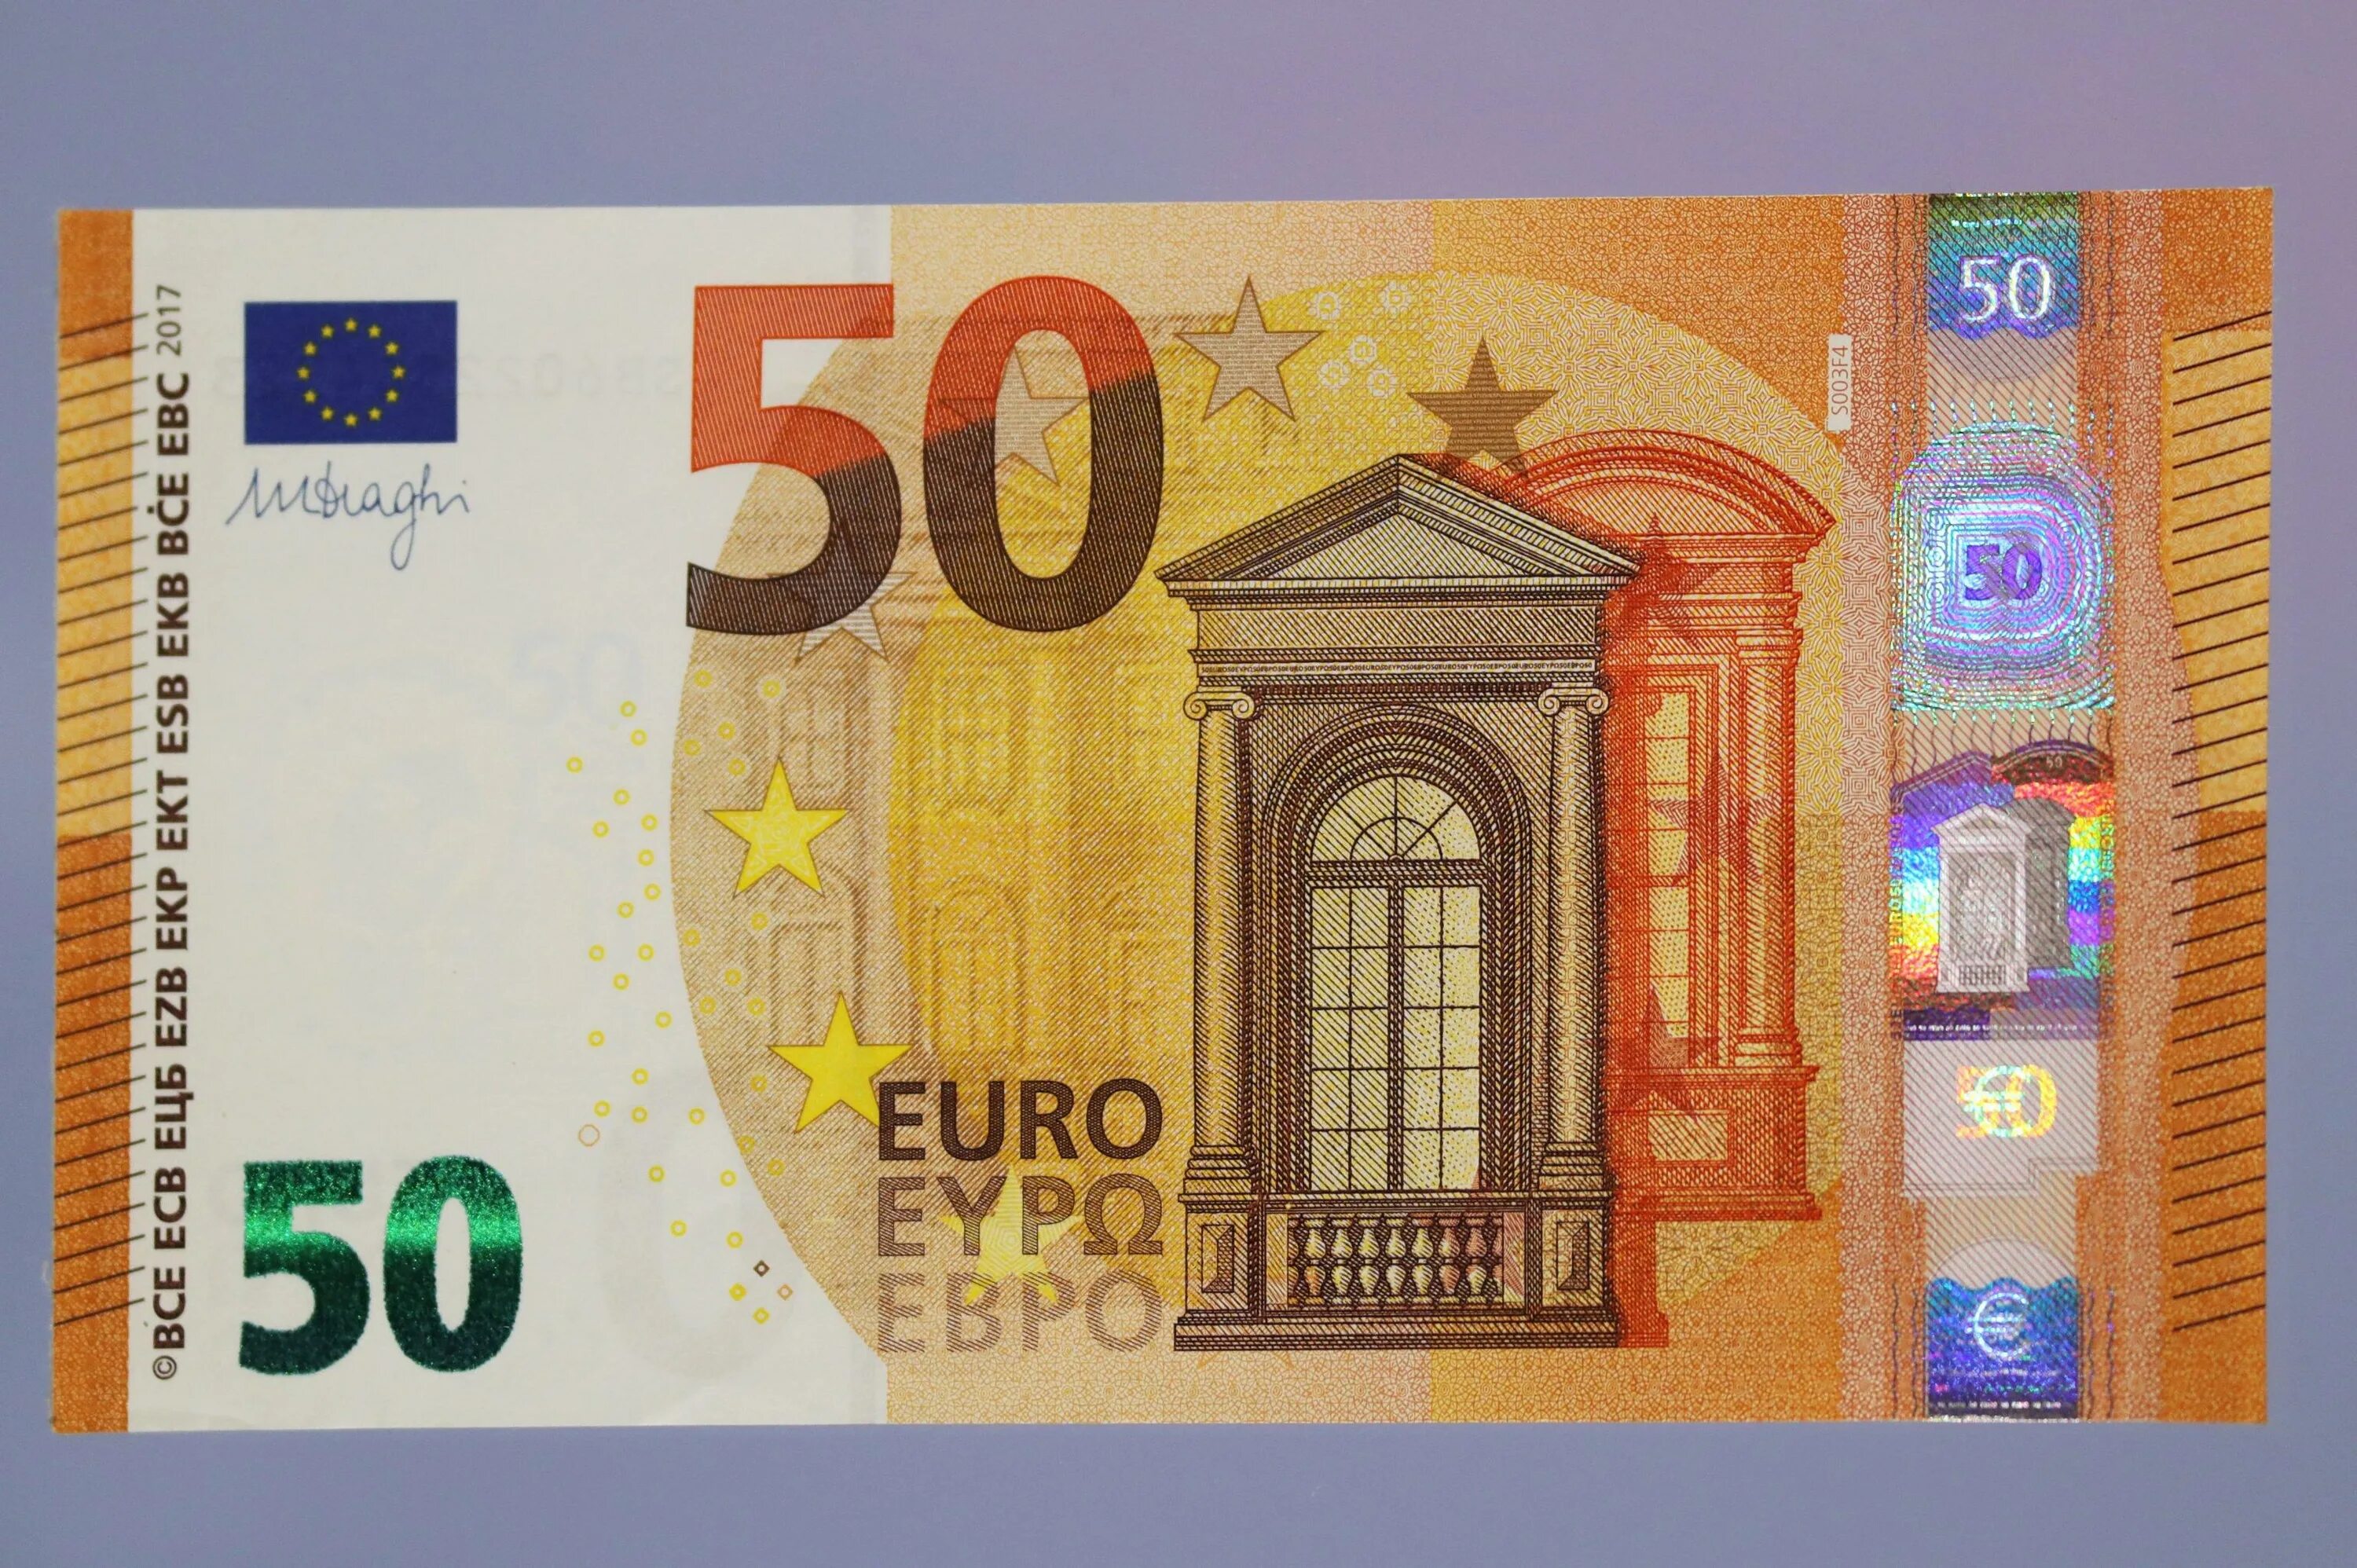 Купюра валют. Банкноты 50 евро. 50 Евро купюра. Банкнота 50 евро нового образца. Как выглядит банкнота 50 евро.